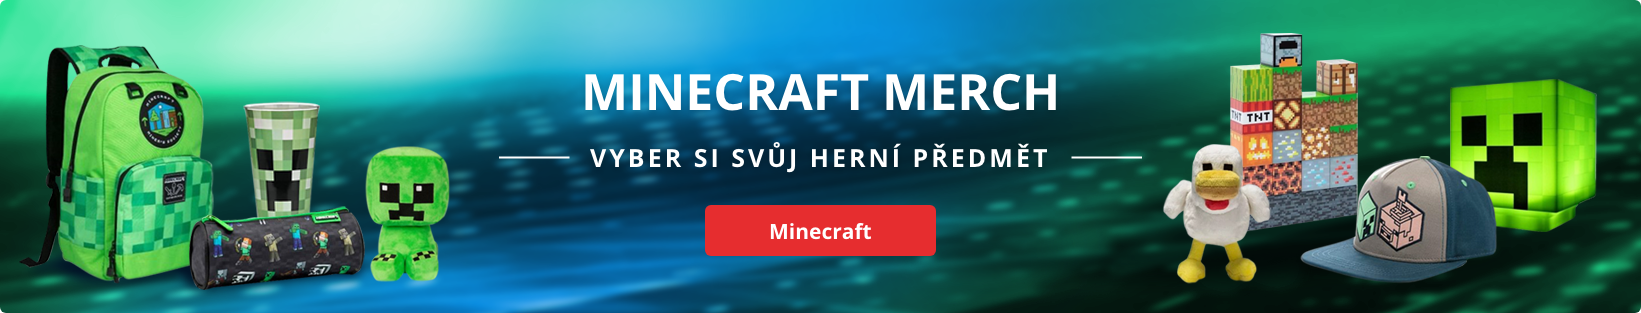 Minecraft merch